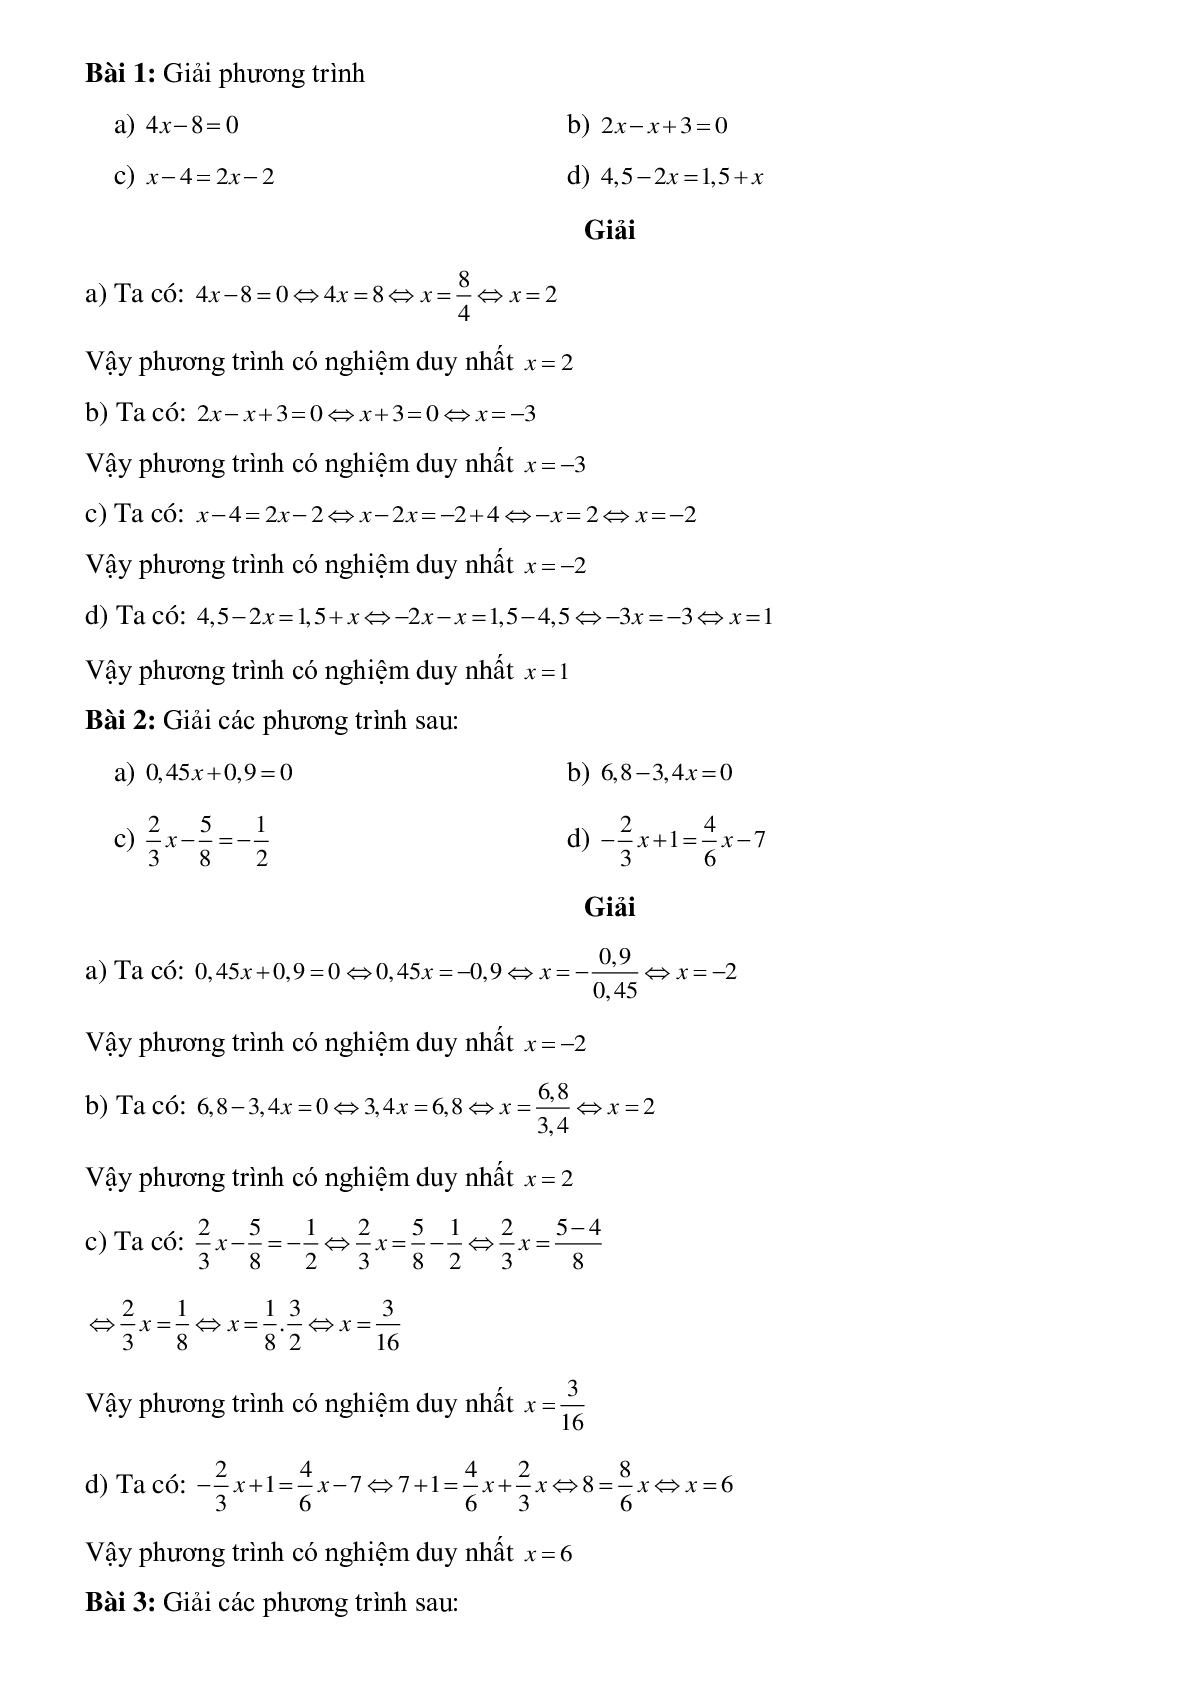 Hệ thống lý thuyết và bài tập về Phương trình bậc nhất và phương trình đưa về dạng ax+b=0 có lời giải (trang 2)